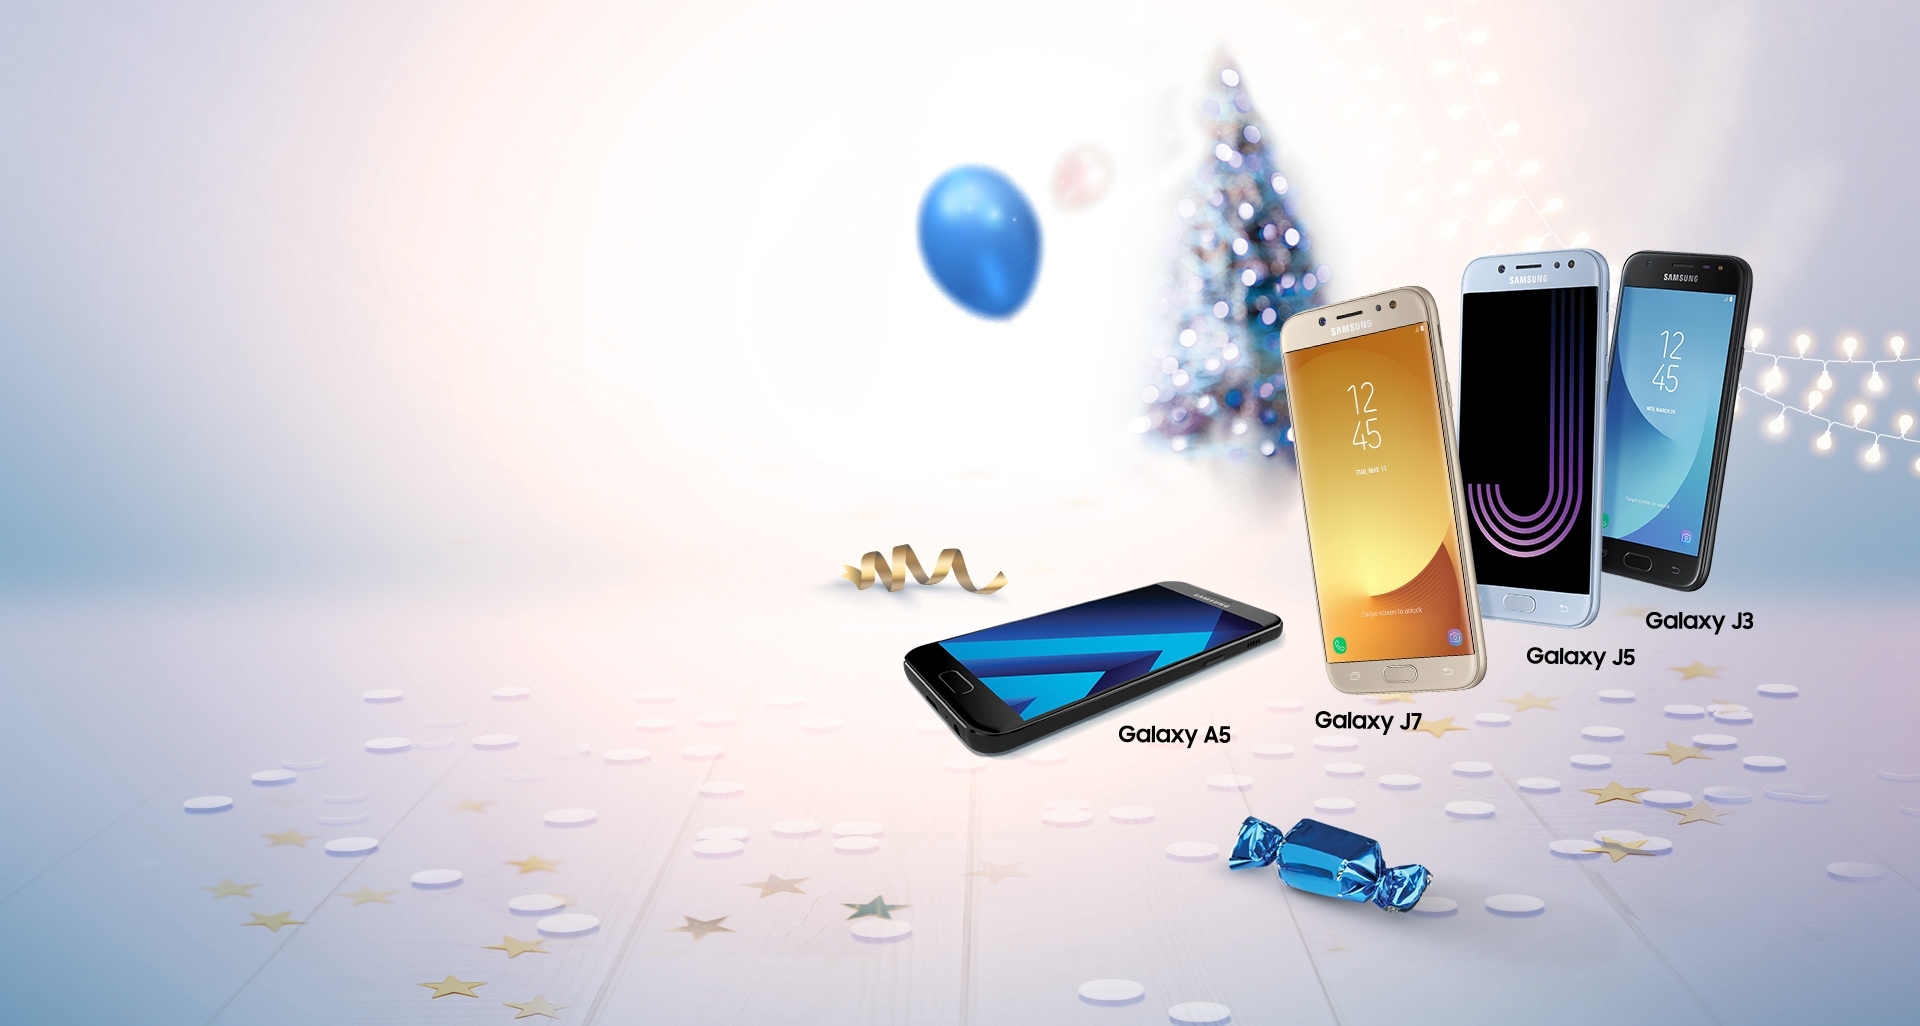 Promocija mobilnih telefona - Galaxy J7, J5, J3 i A5: Nova godina nove cene!